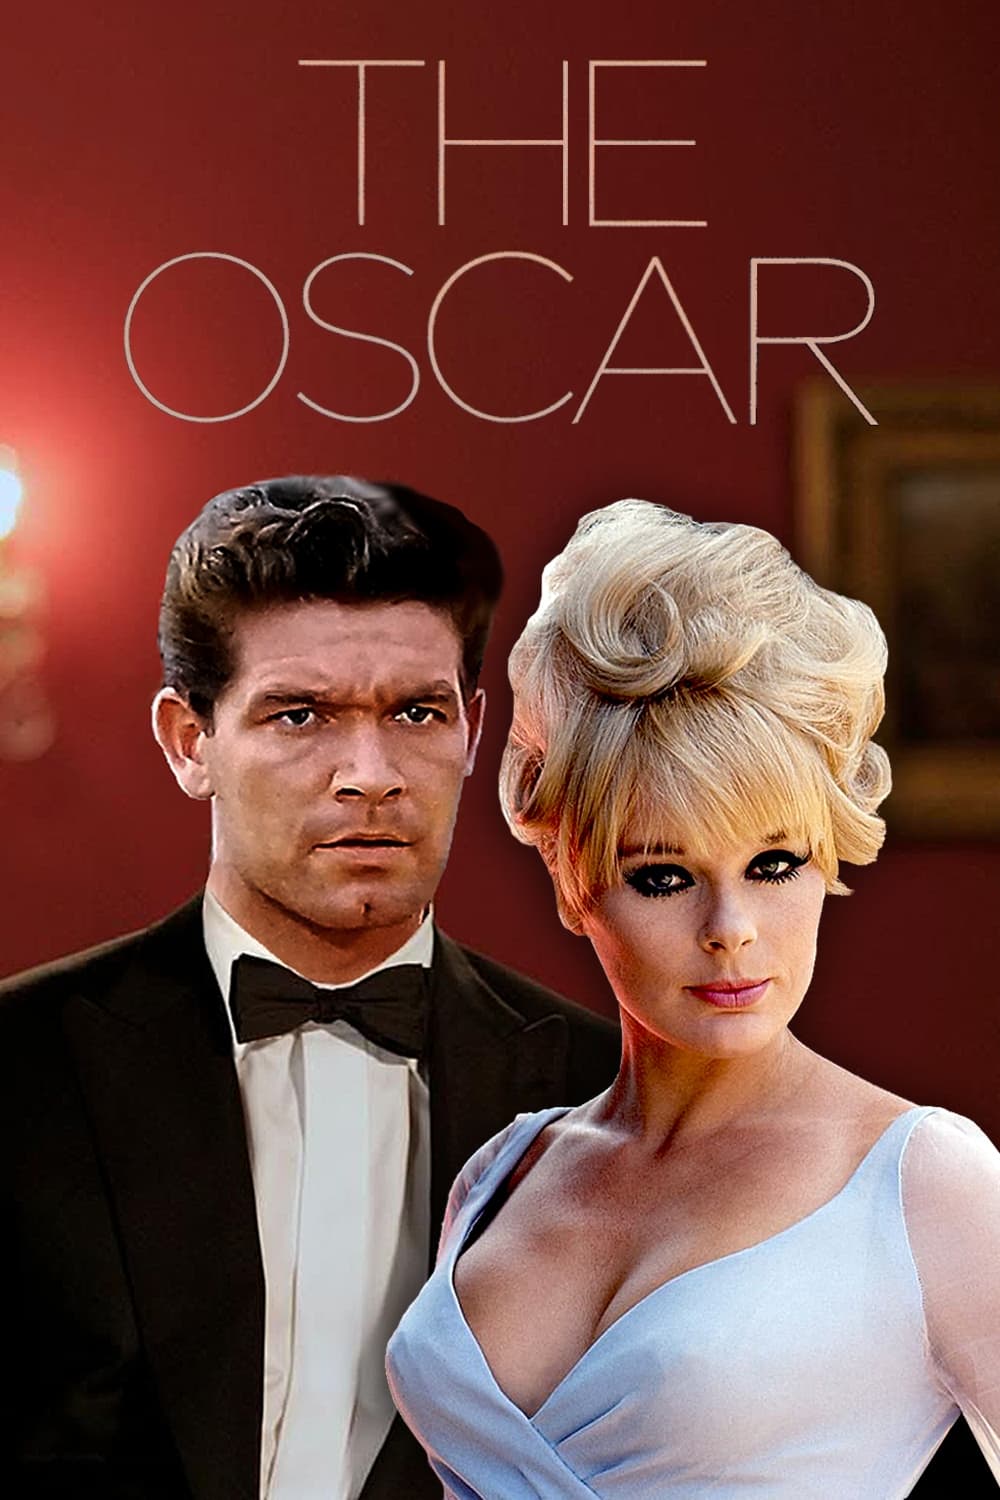 The Oscar (1966)